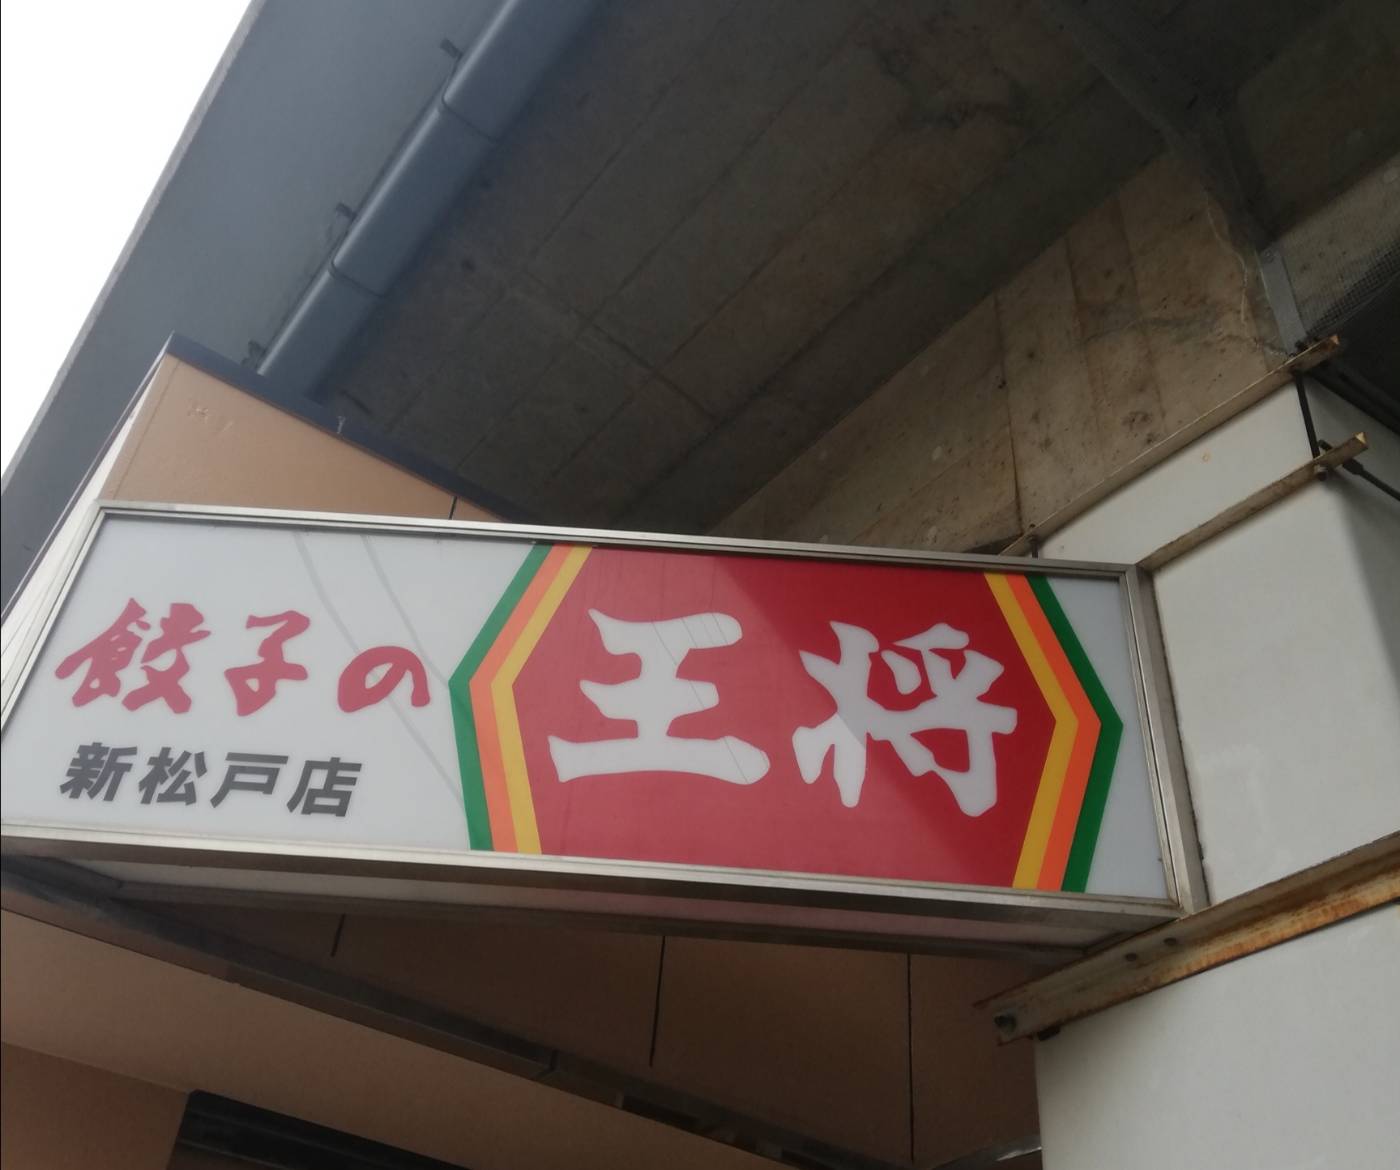 餃子の王将新松戸店臨時休校250円弁当